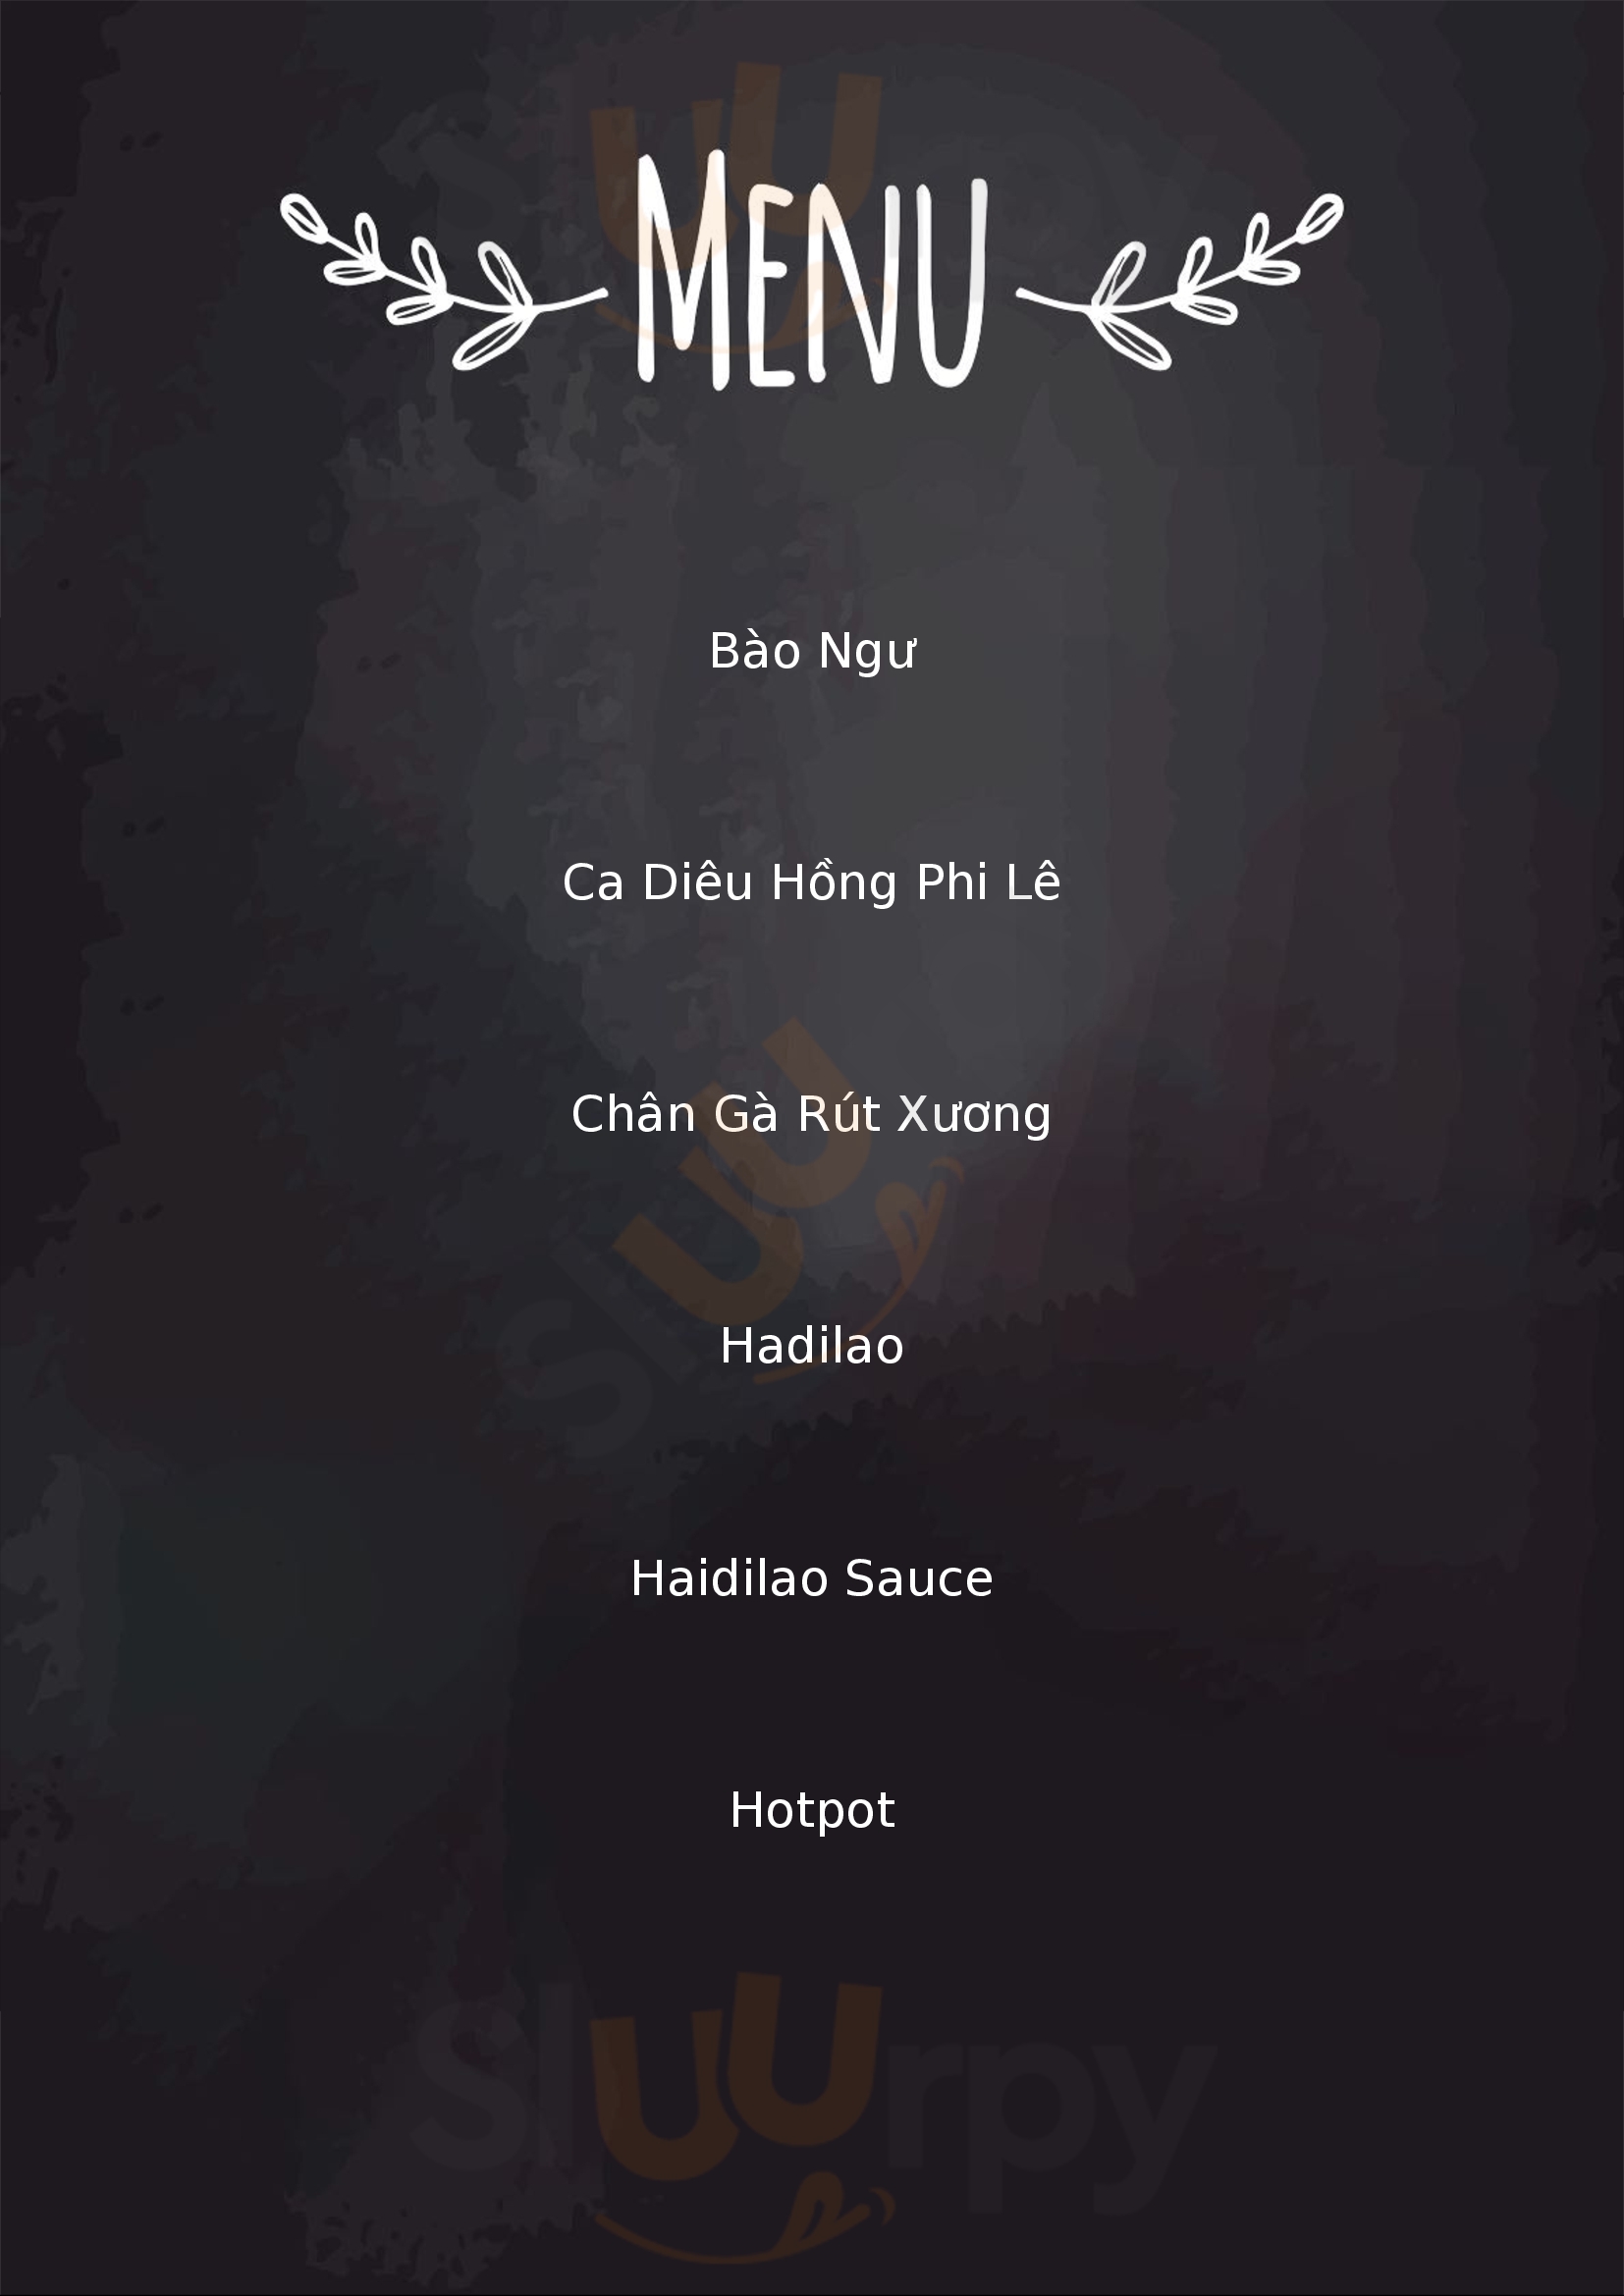 Haidilao Thành phố Hồ Chí Minh Menu - 1